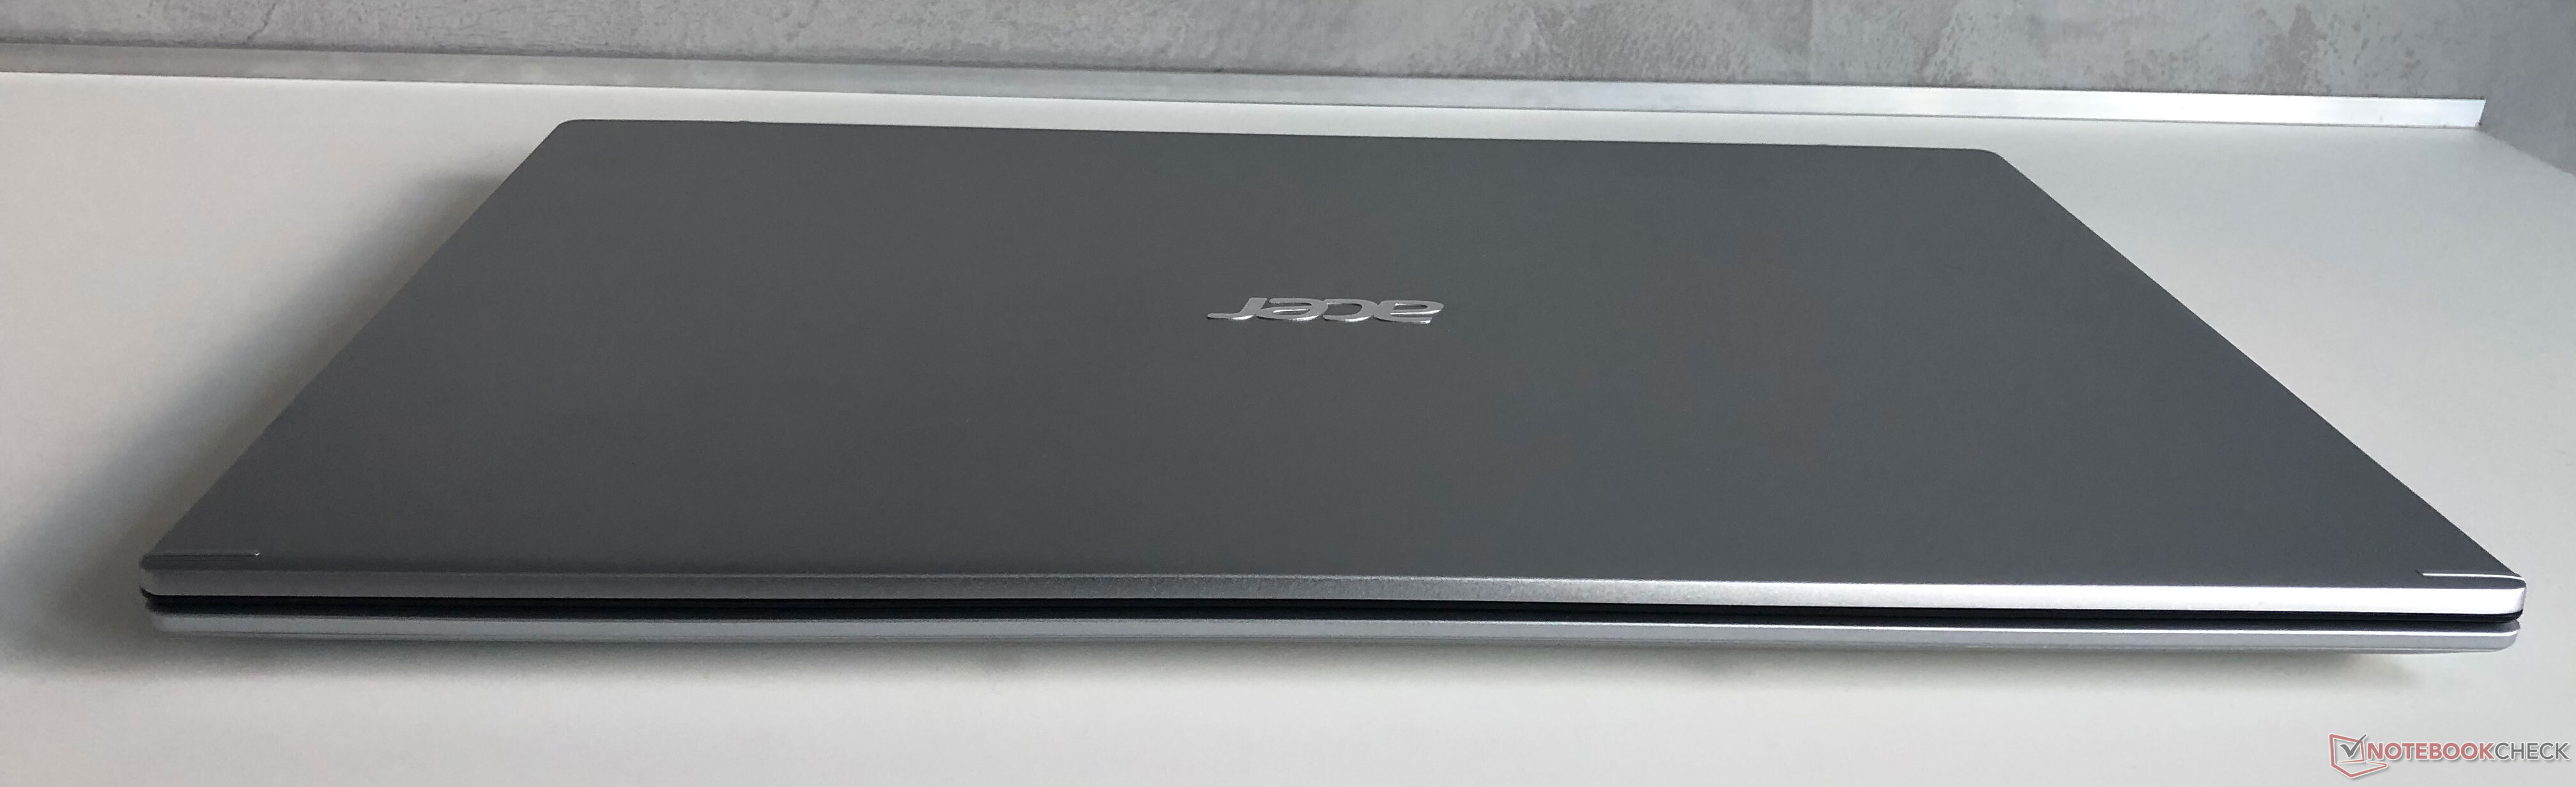 Ноутбук Acer 17 Дюймов Цена